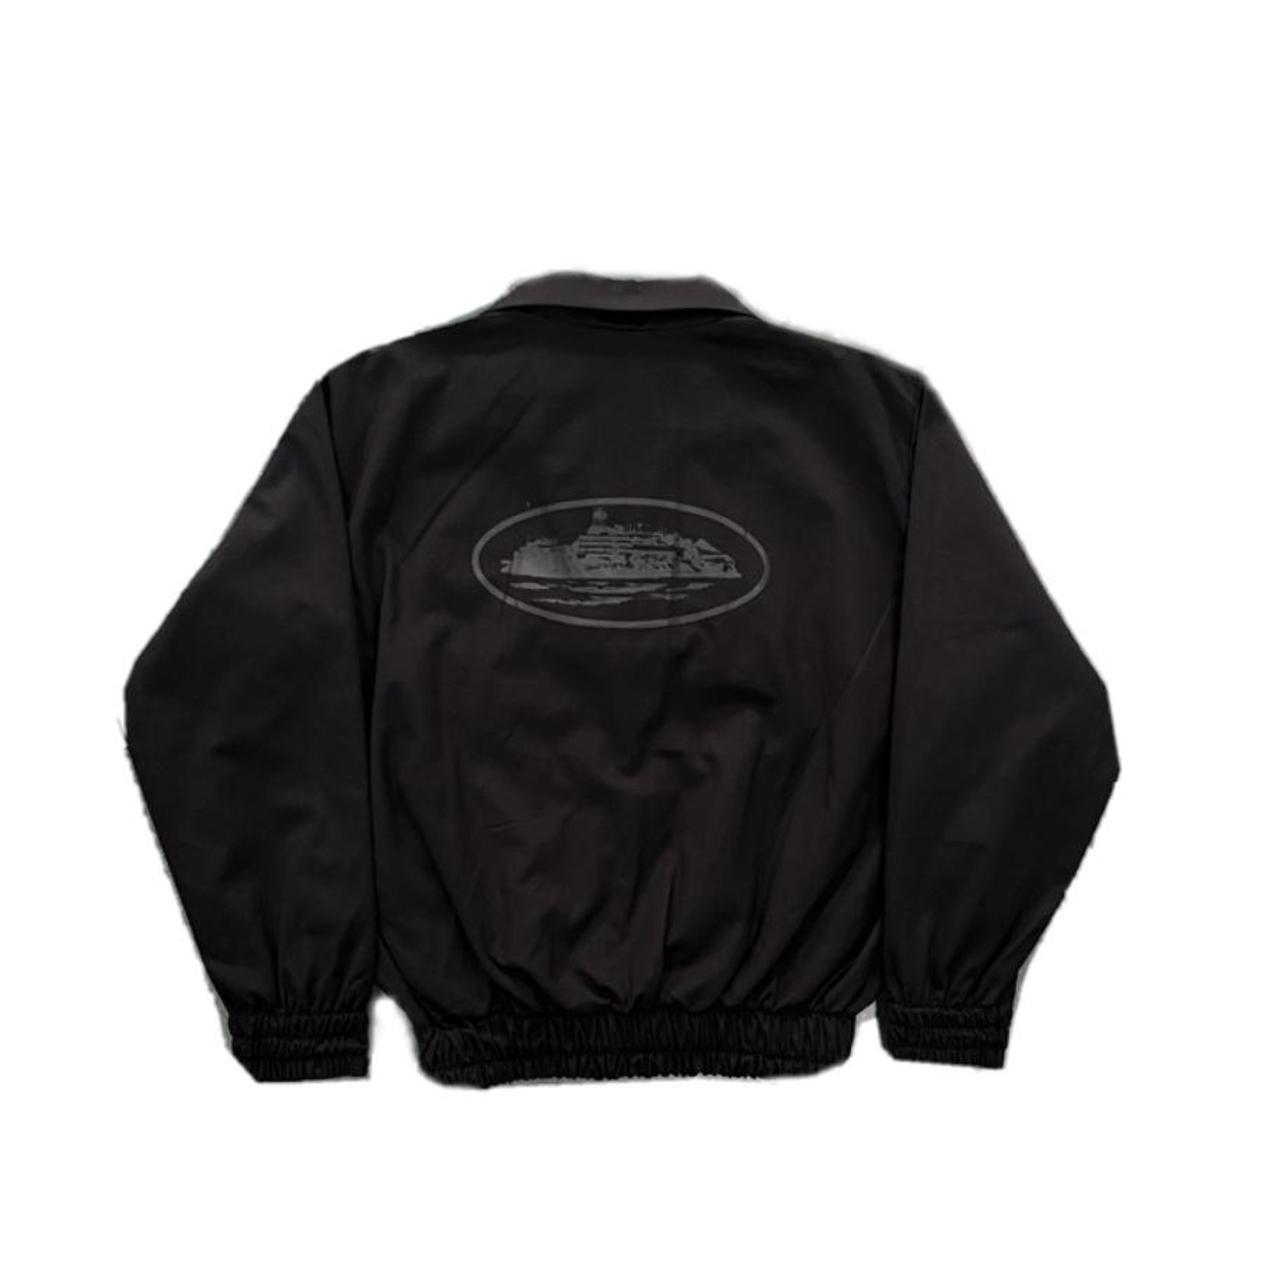 Corteiz Triple Black Jacket 100% authentic Sizes-... - Depop